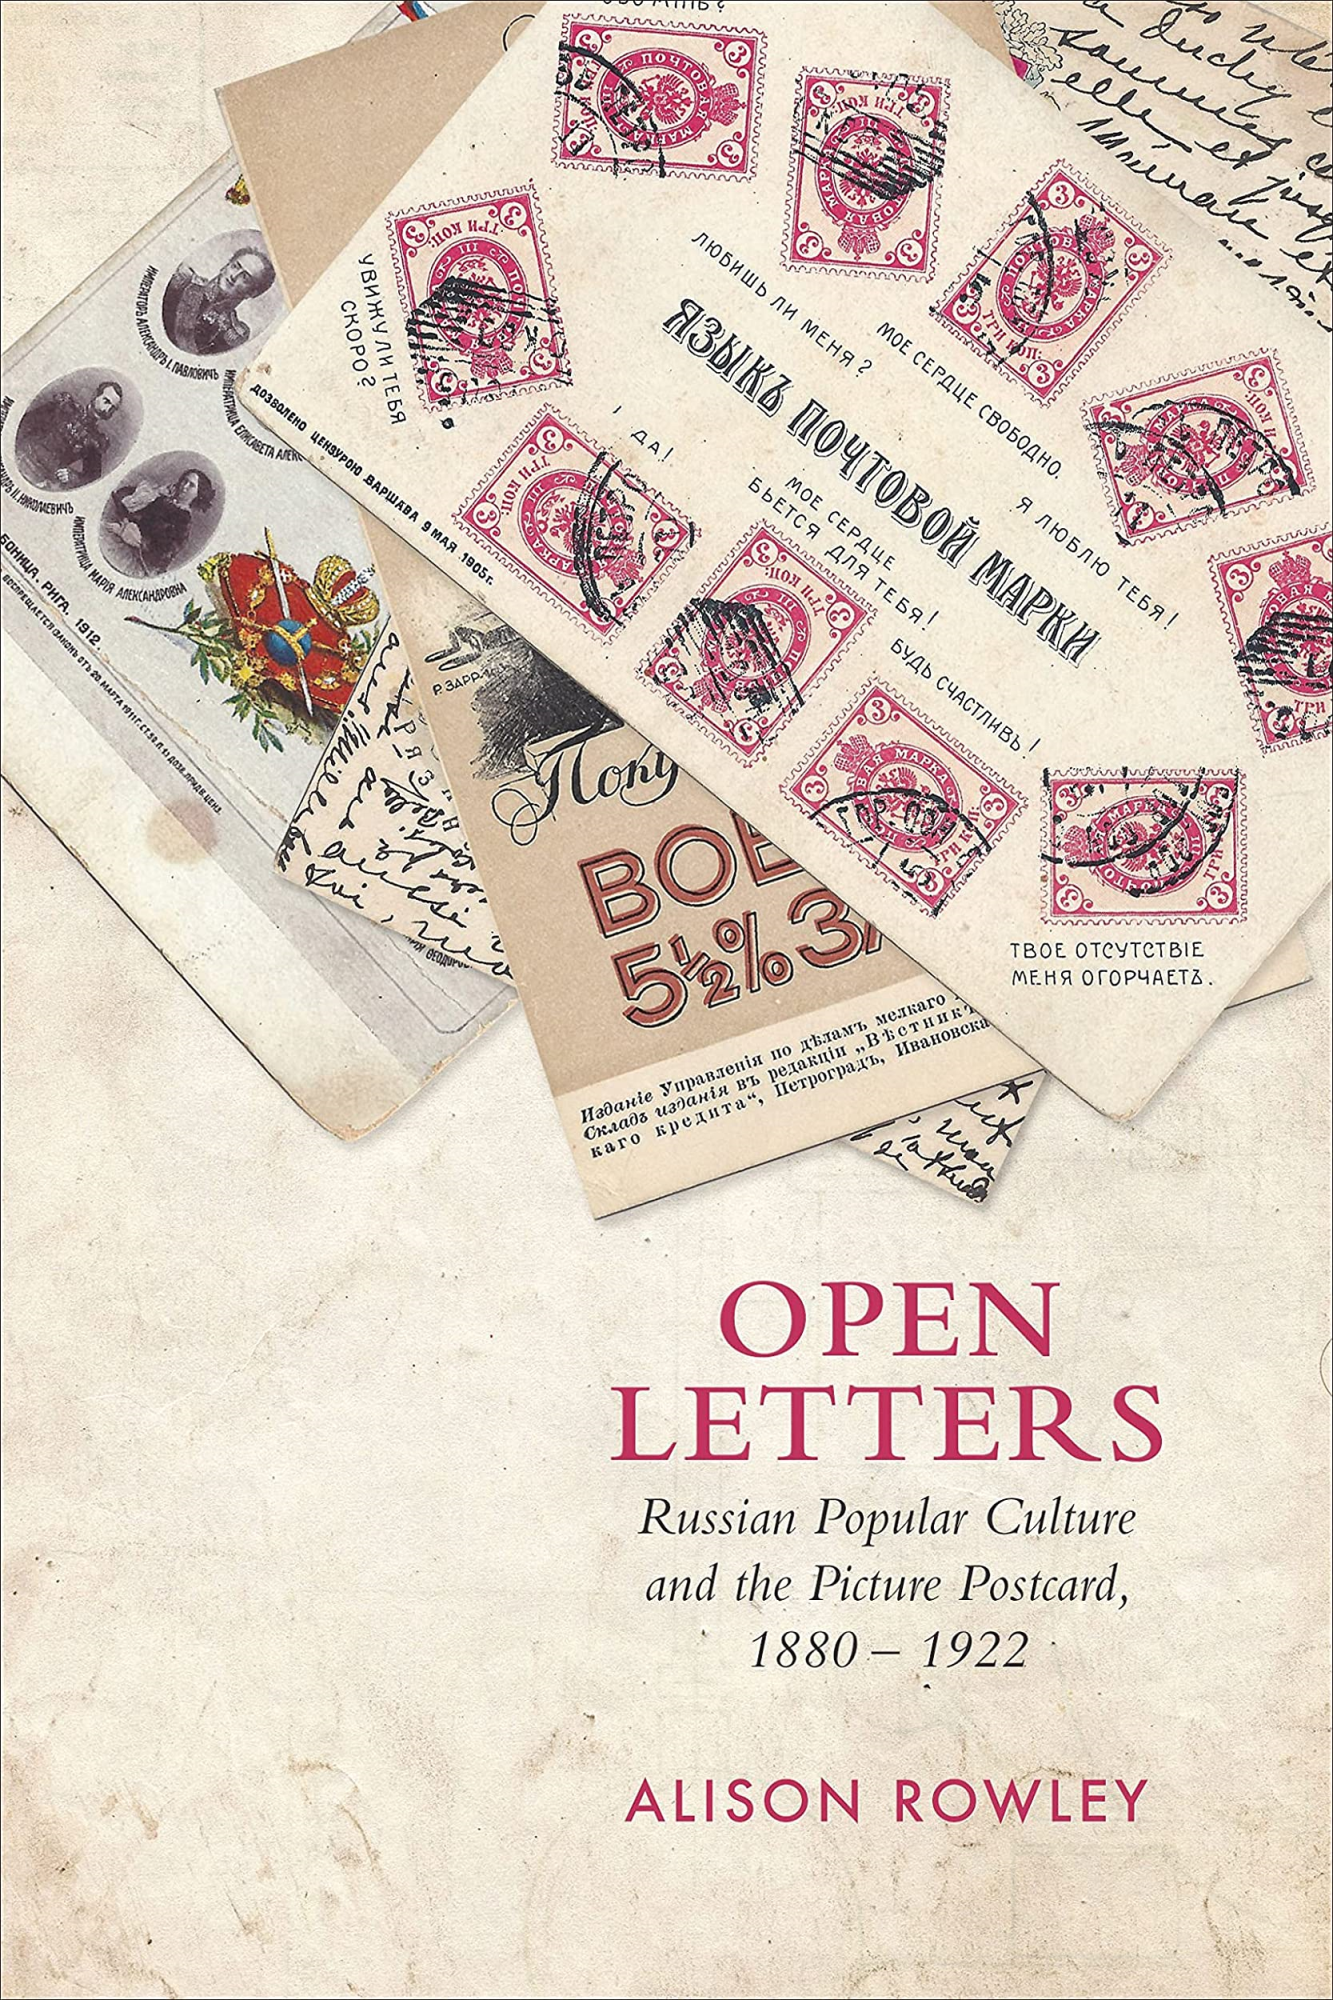 Libri Rowley - Open Letters NUOVO SIGILLATO, EDIZIONE DEL 20/10/2021 SUBITO DISPONIBILE